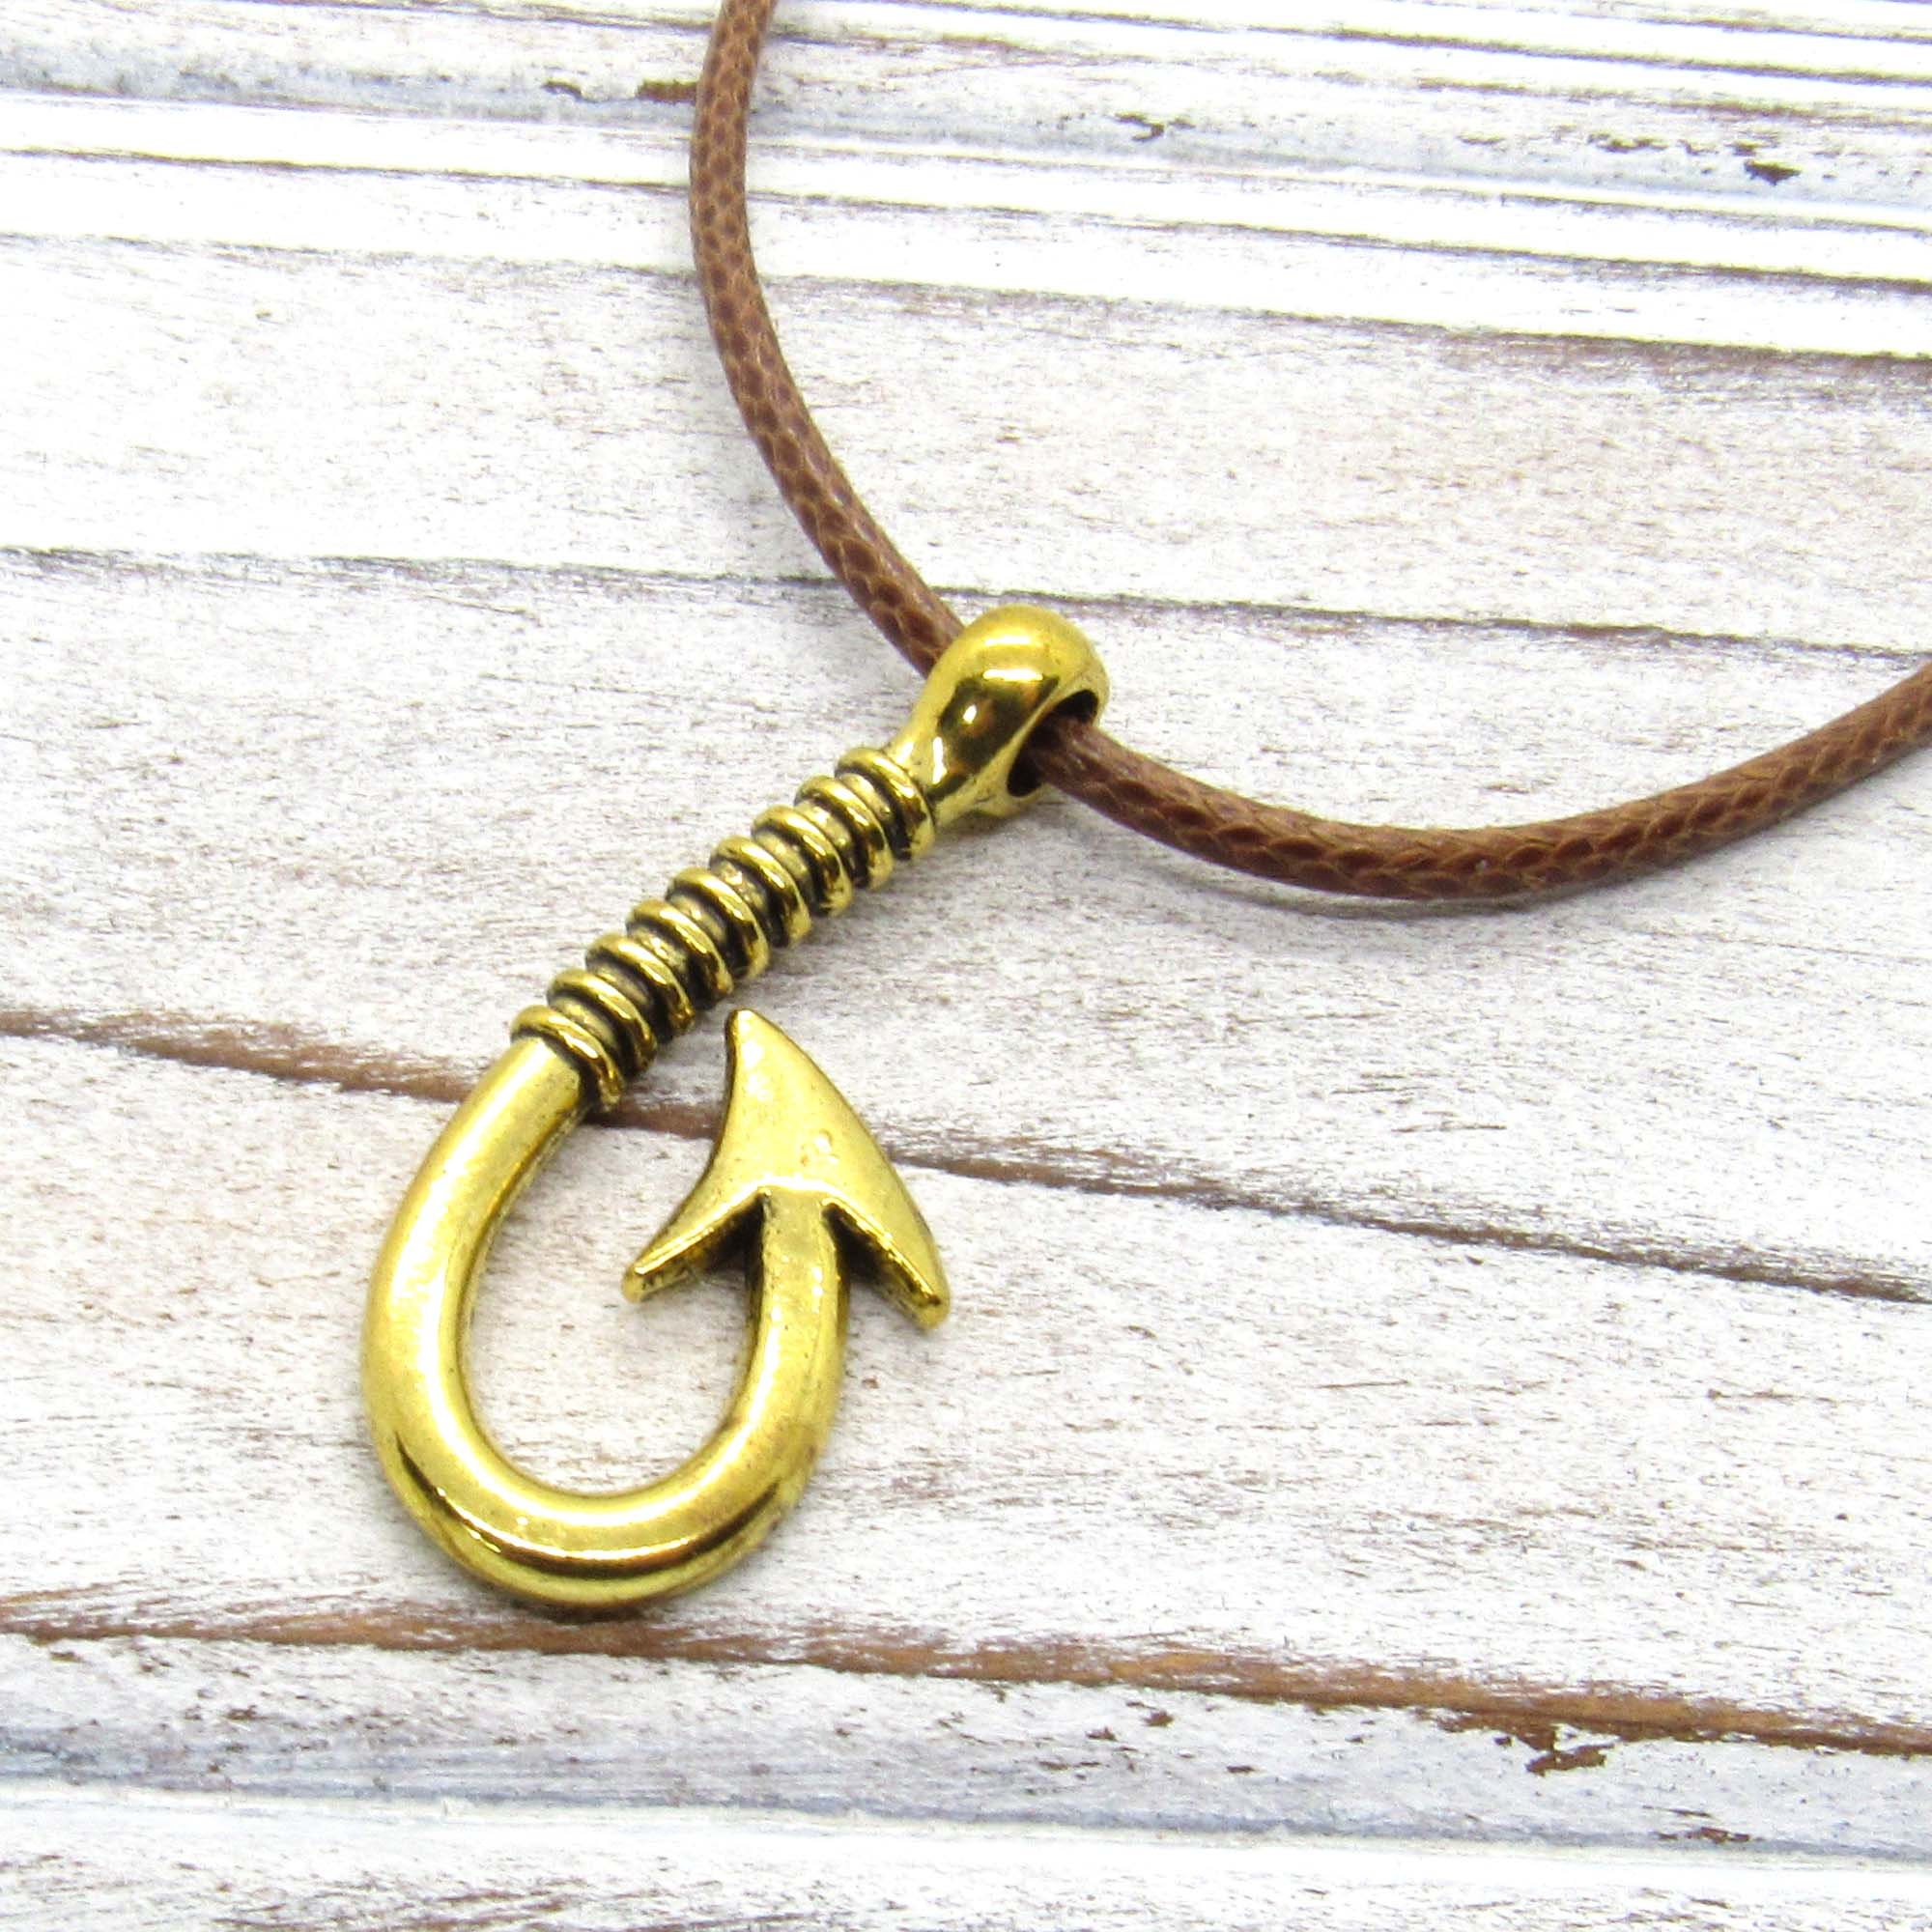 Antique Gold Tone Fish Hook Pendant Necklace, Fish Hook Charm Necklace, Fisher Jewelry, Gift for Men, Men's Jewelry, Women's Jewelry